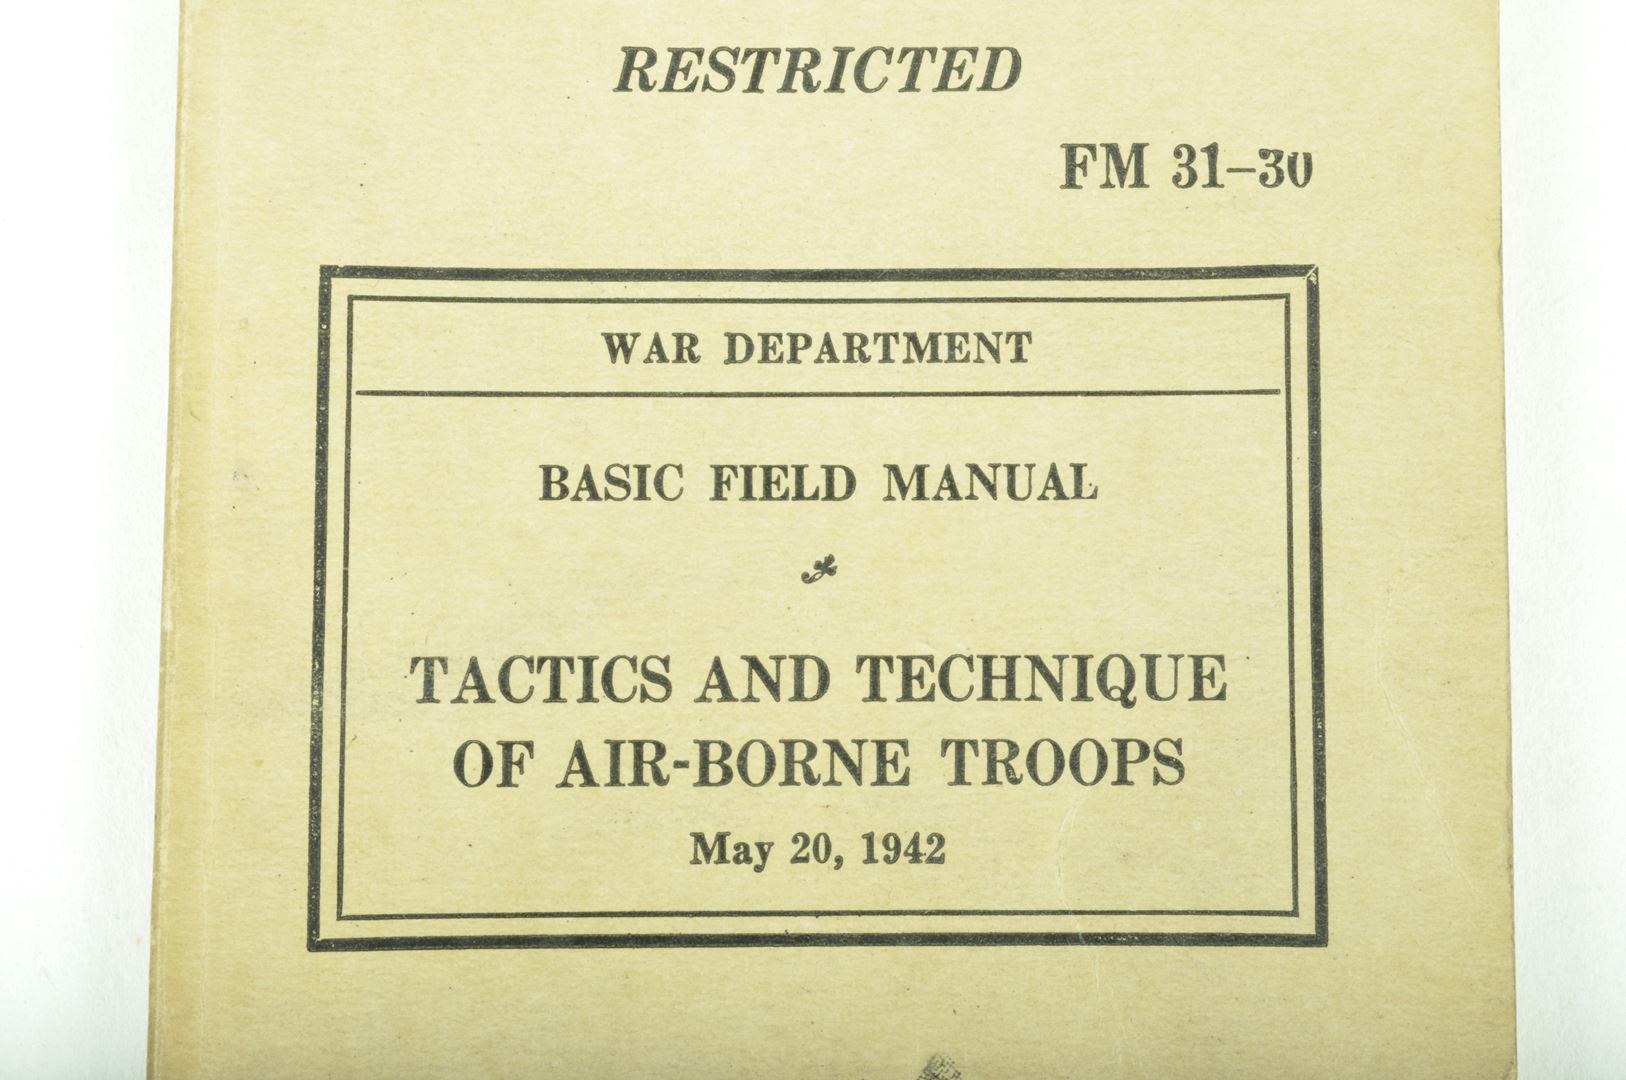 Manuel de campagne Parachutiste "Tactics and Technique of Airborne Troops" daté 1942